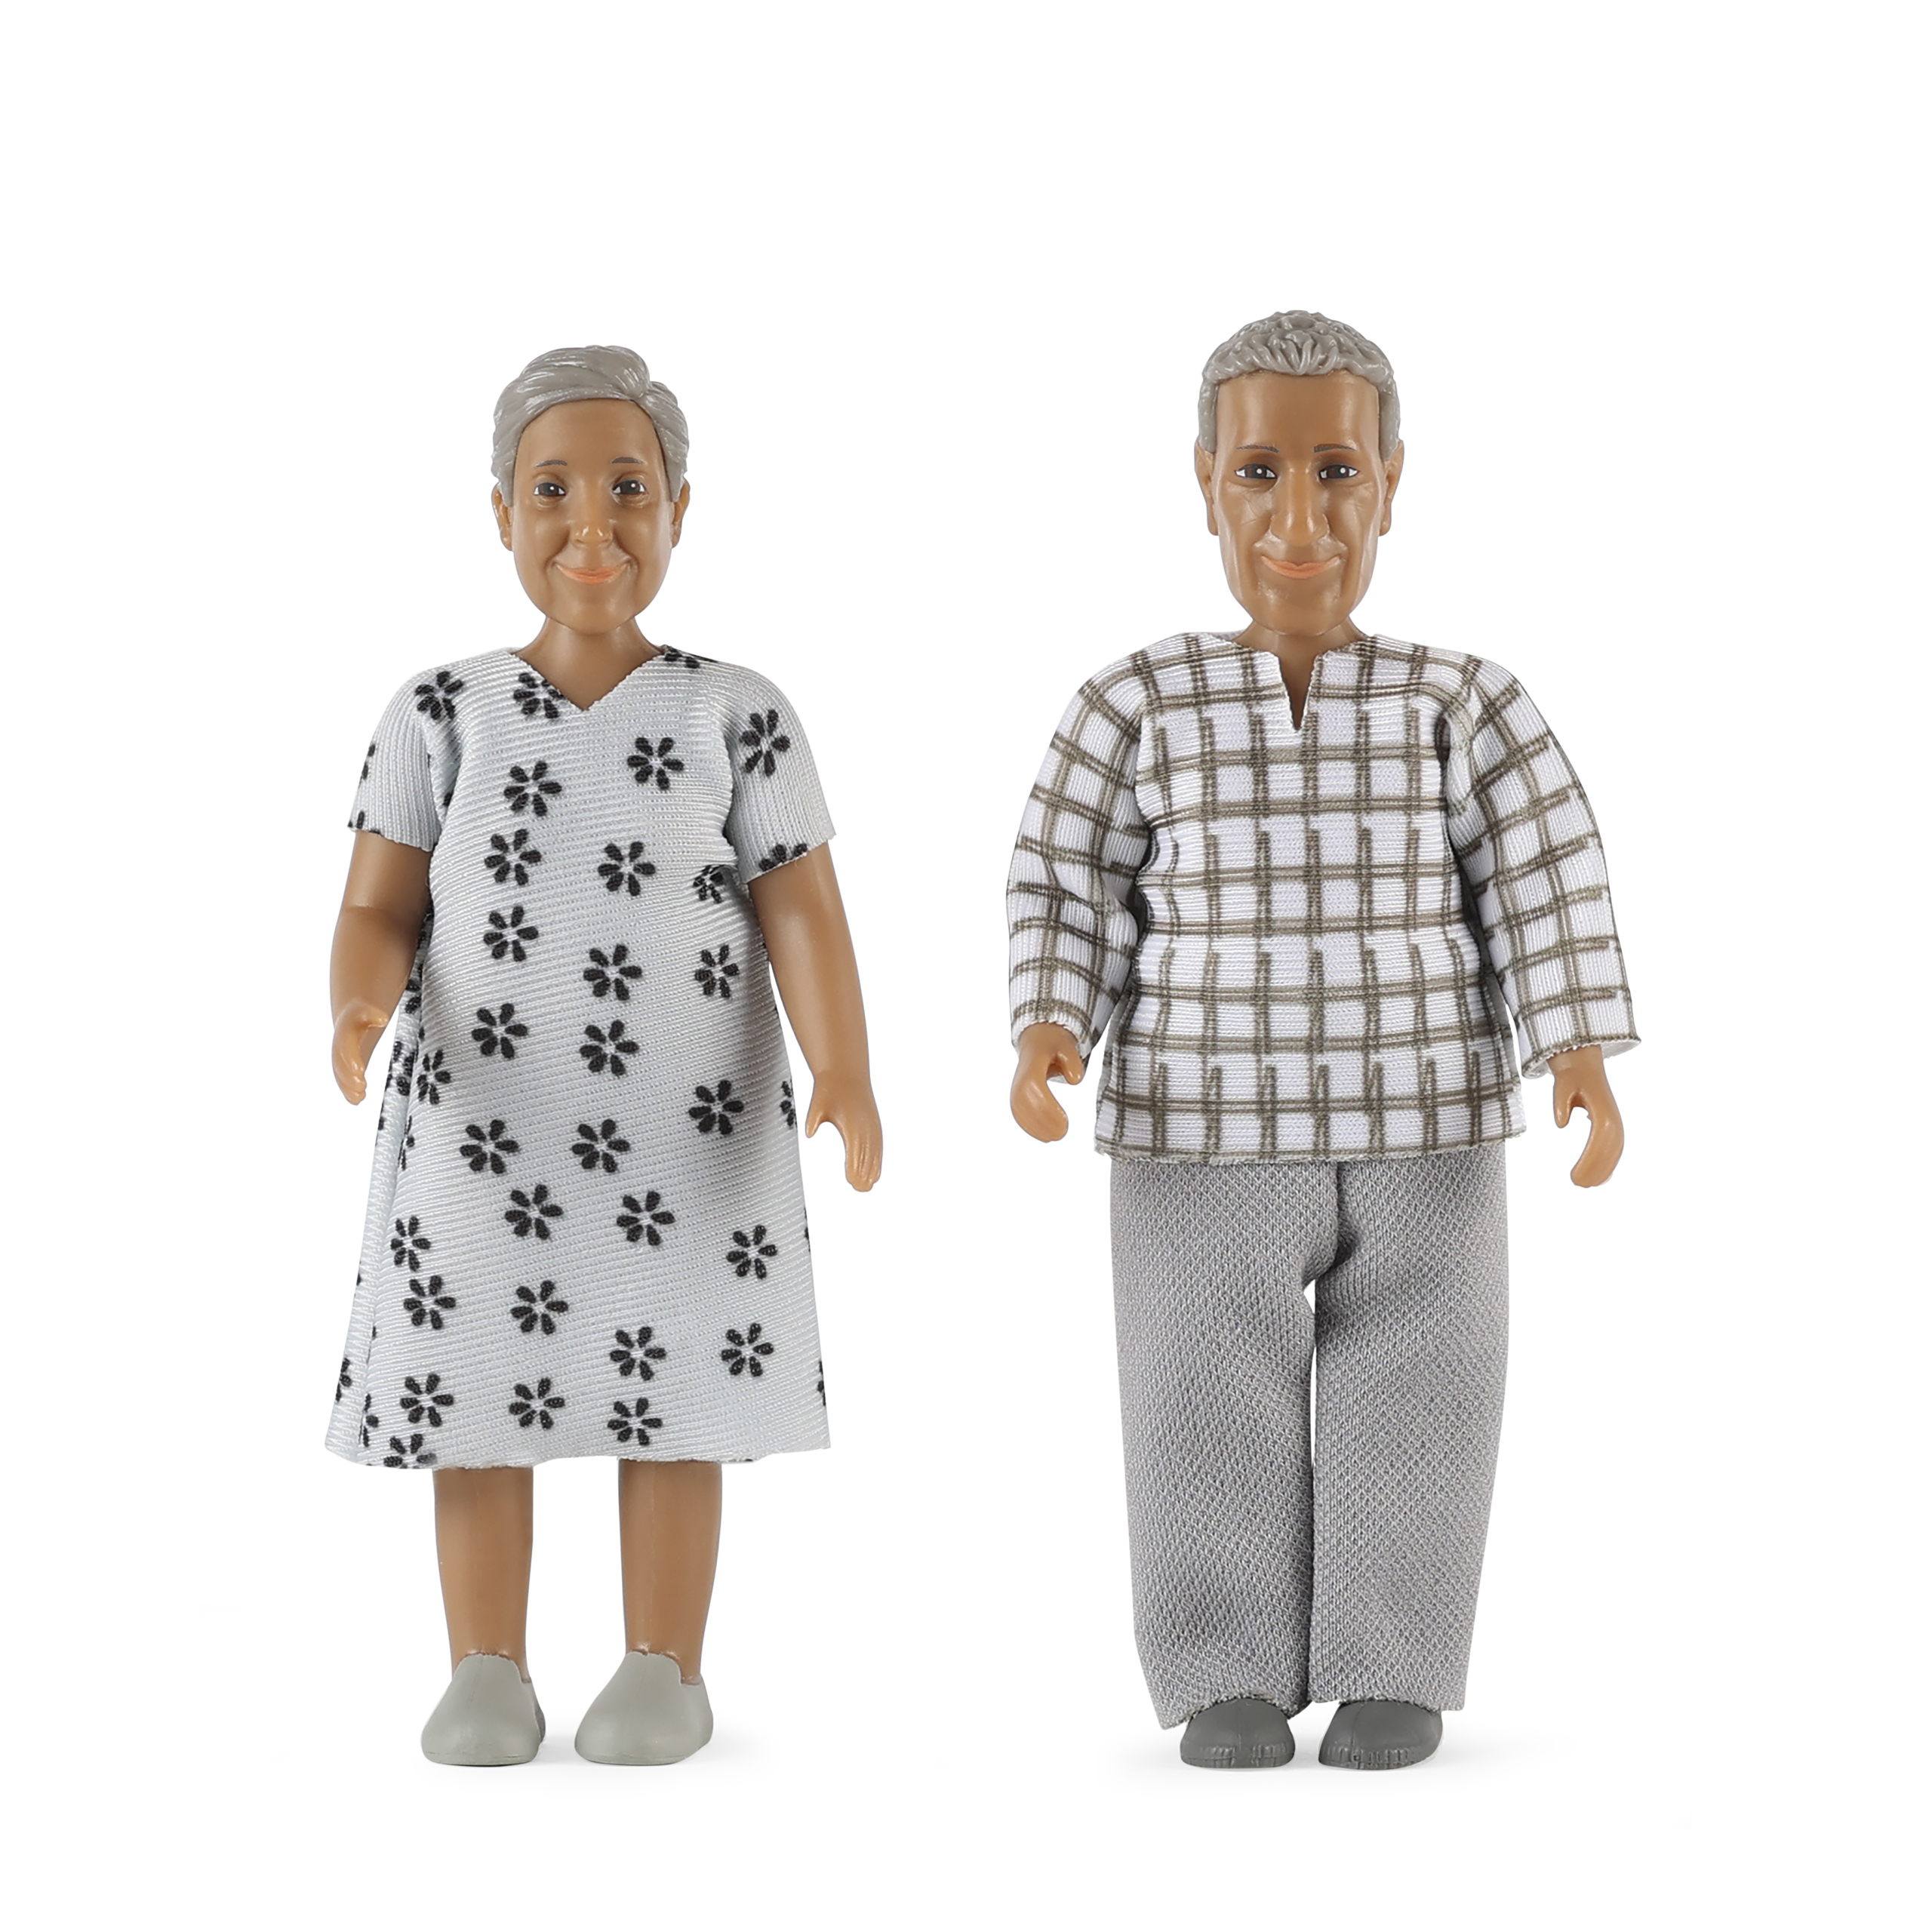 Dark-skinned dolls lundby	dollshouse dolls elderly couple nikki